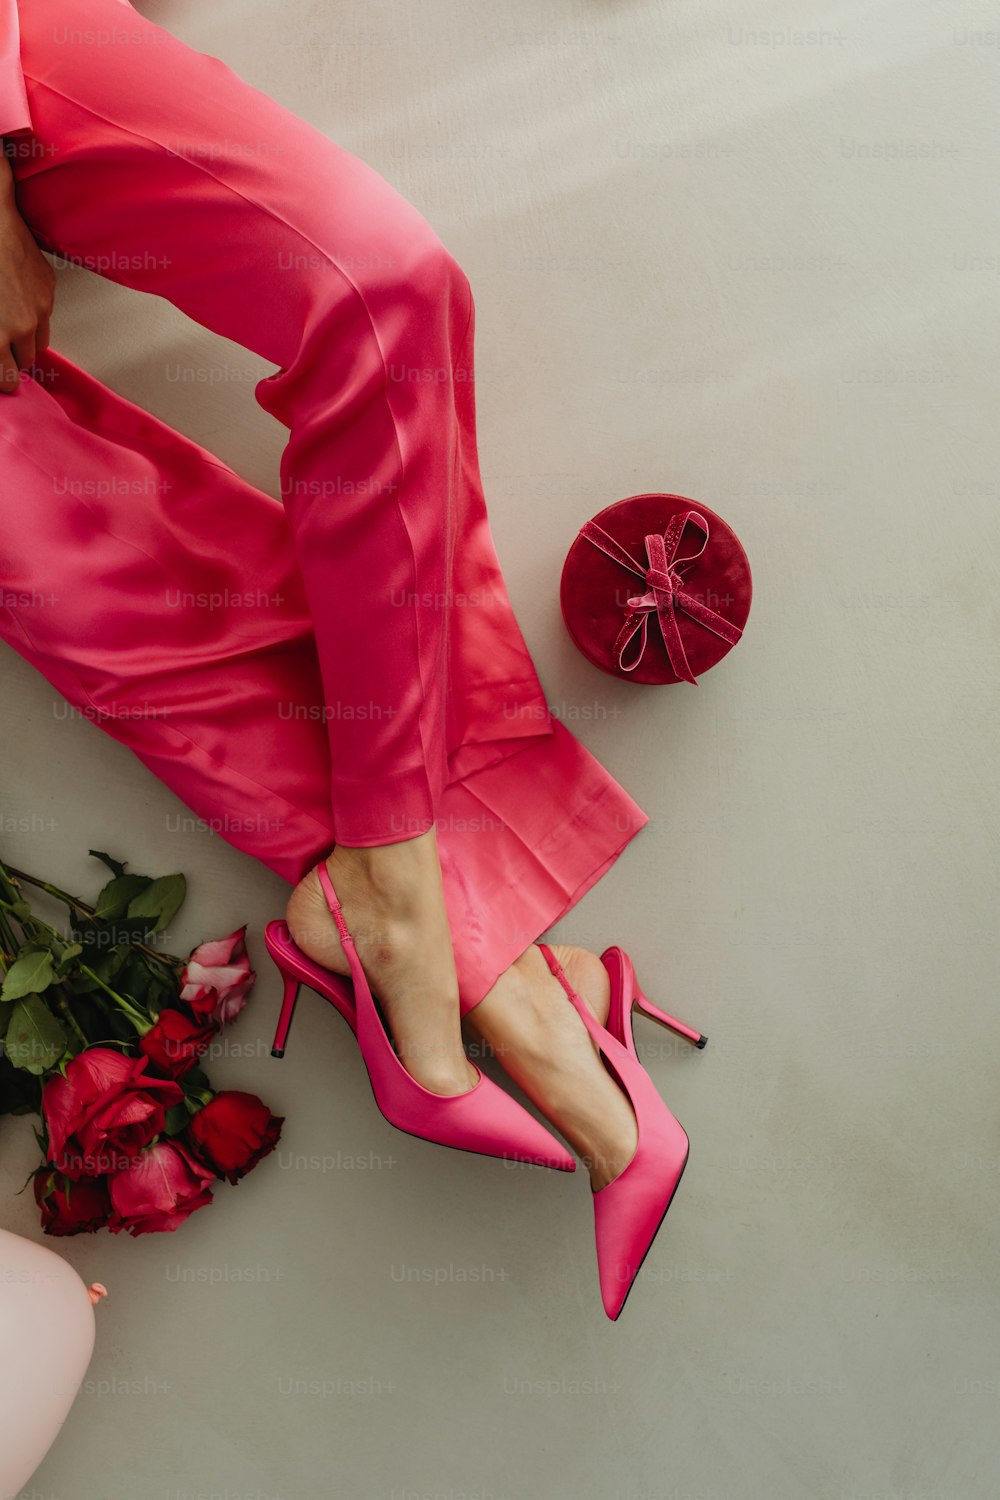 Die Füße einer Frau in rosa Schuhen neben einem Rosenstrauß